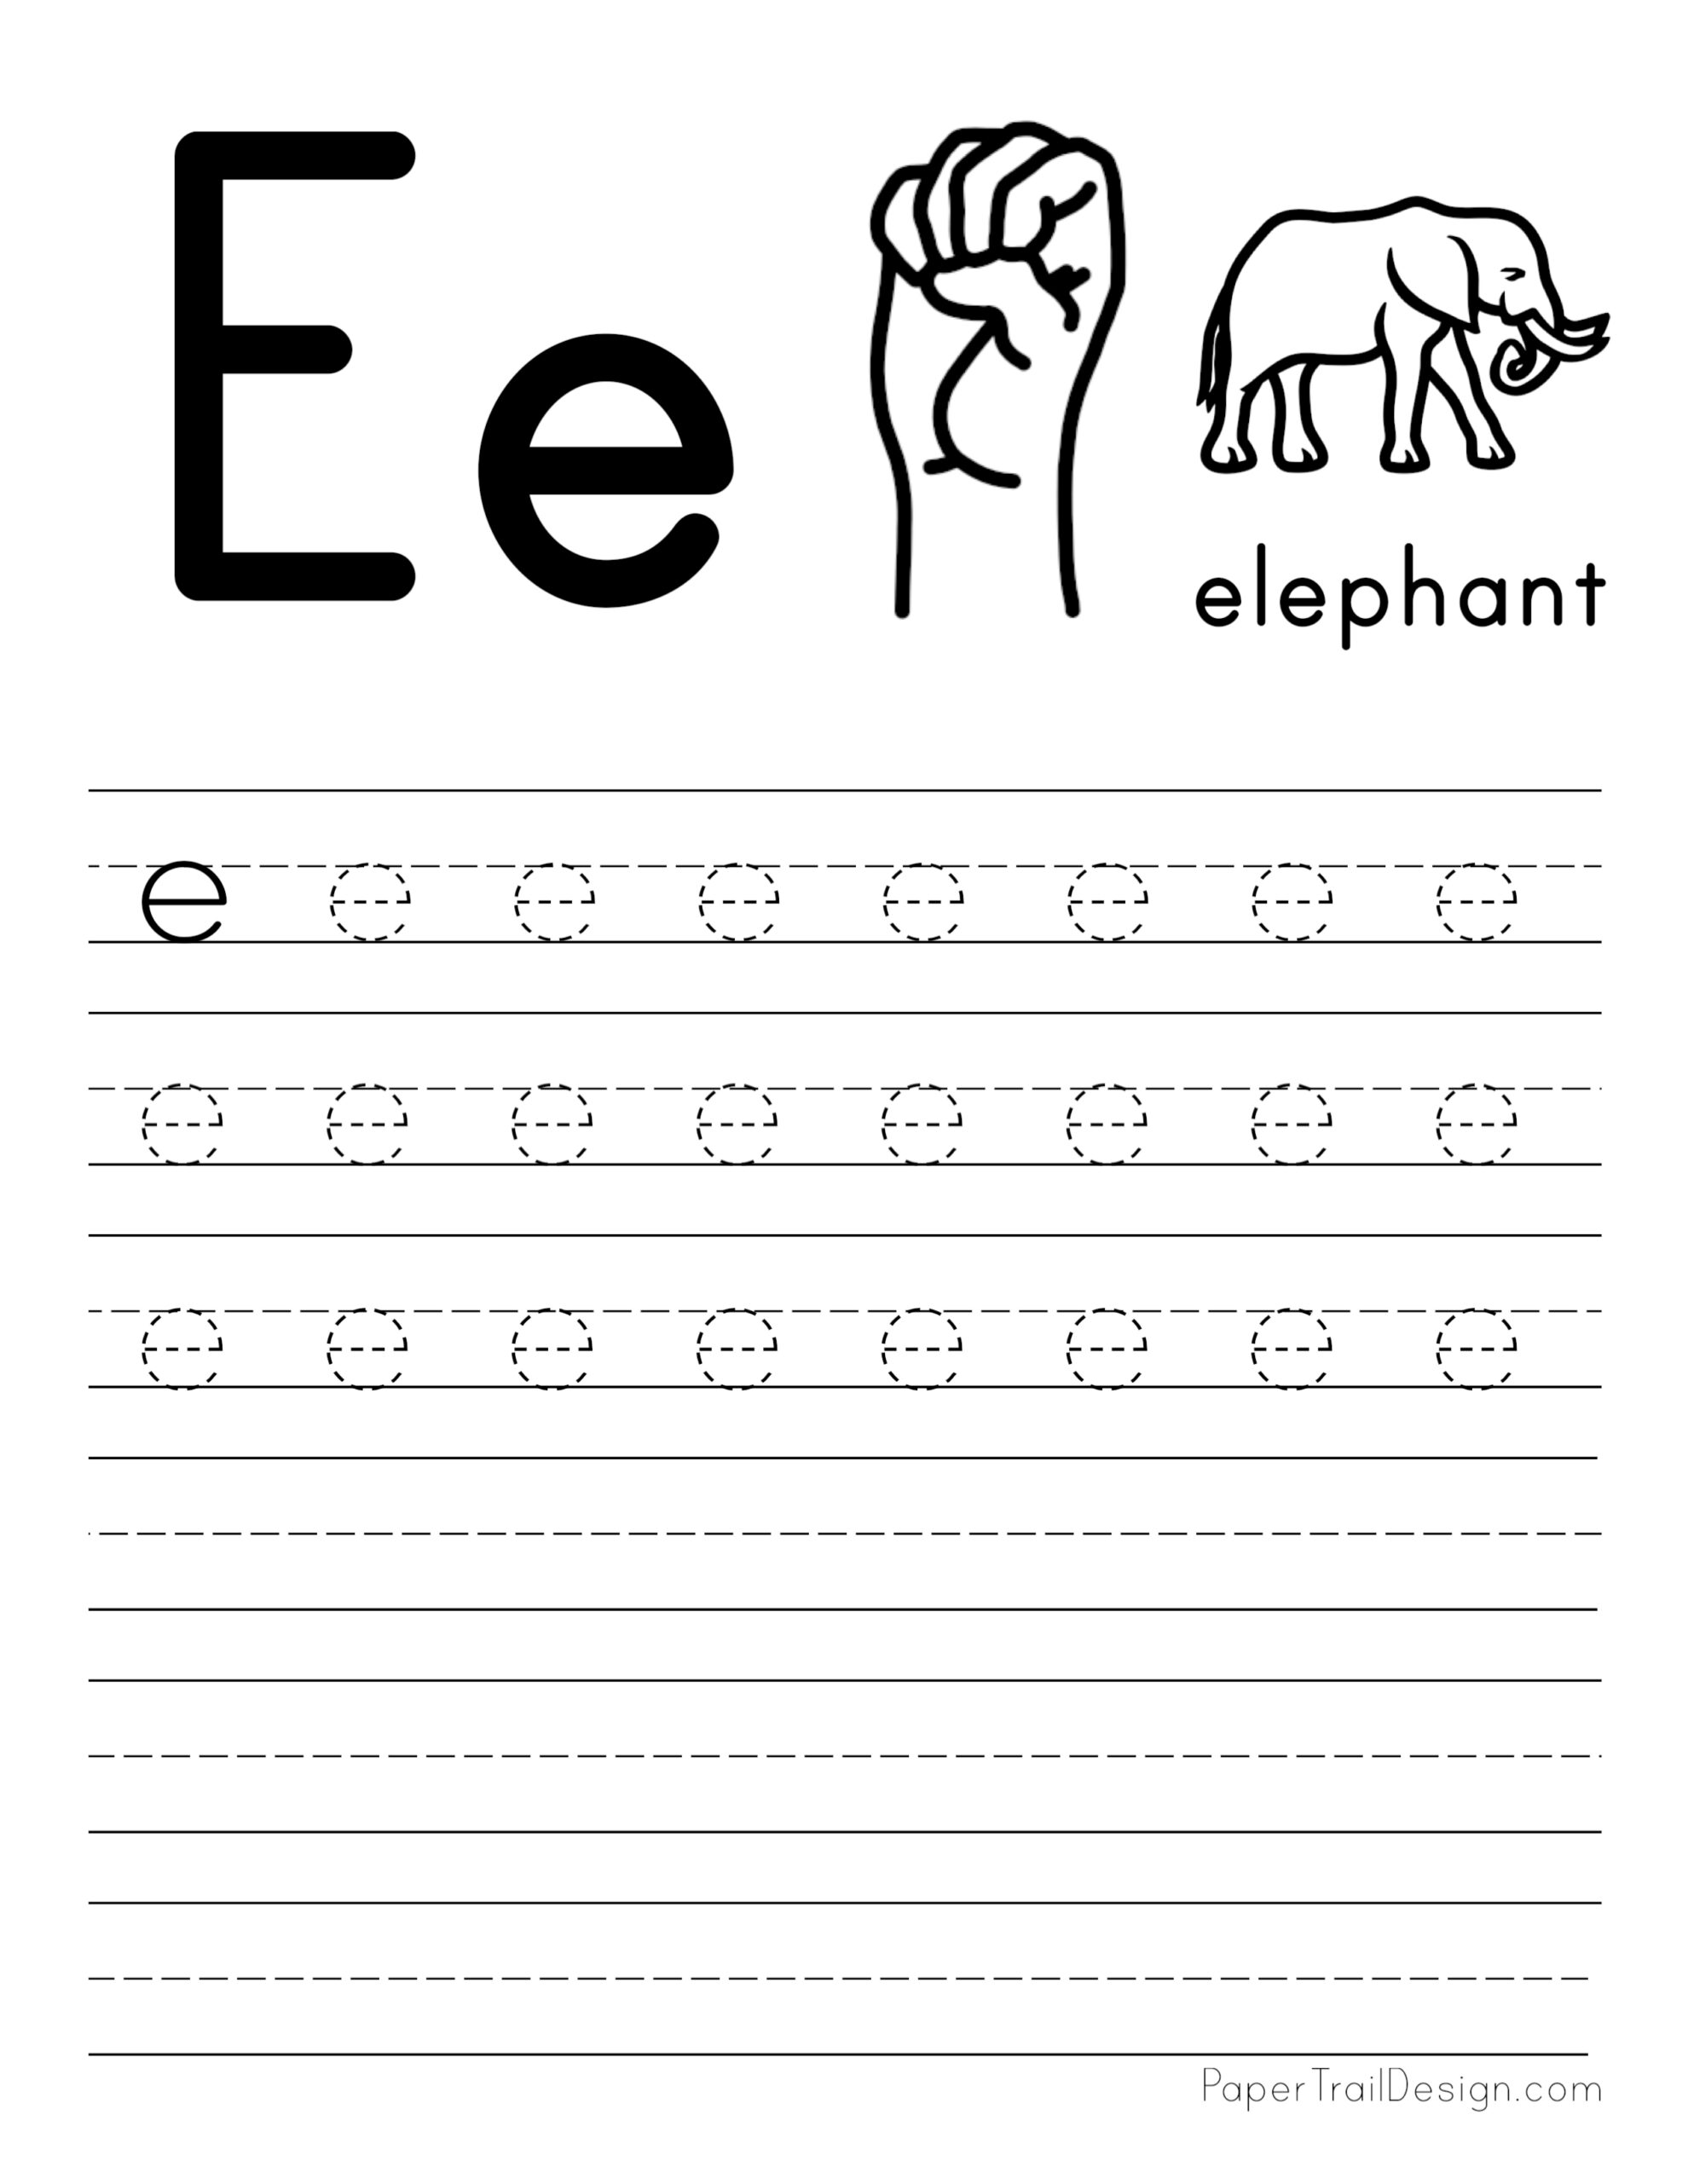 tracing-letter-e-worksheets-for-preschool-a-z-letter-focus-worksheets